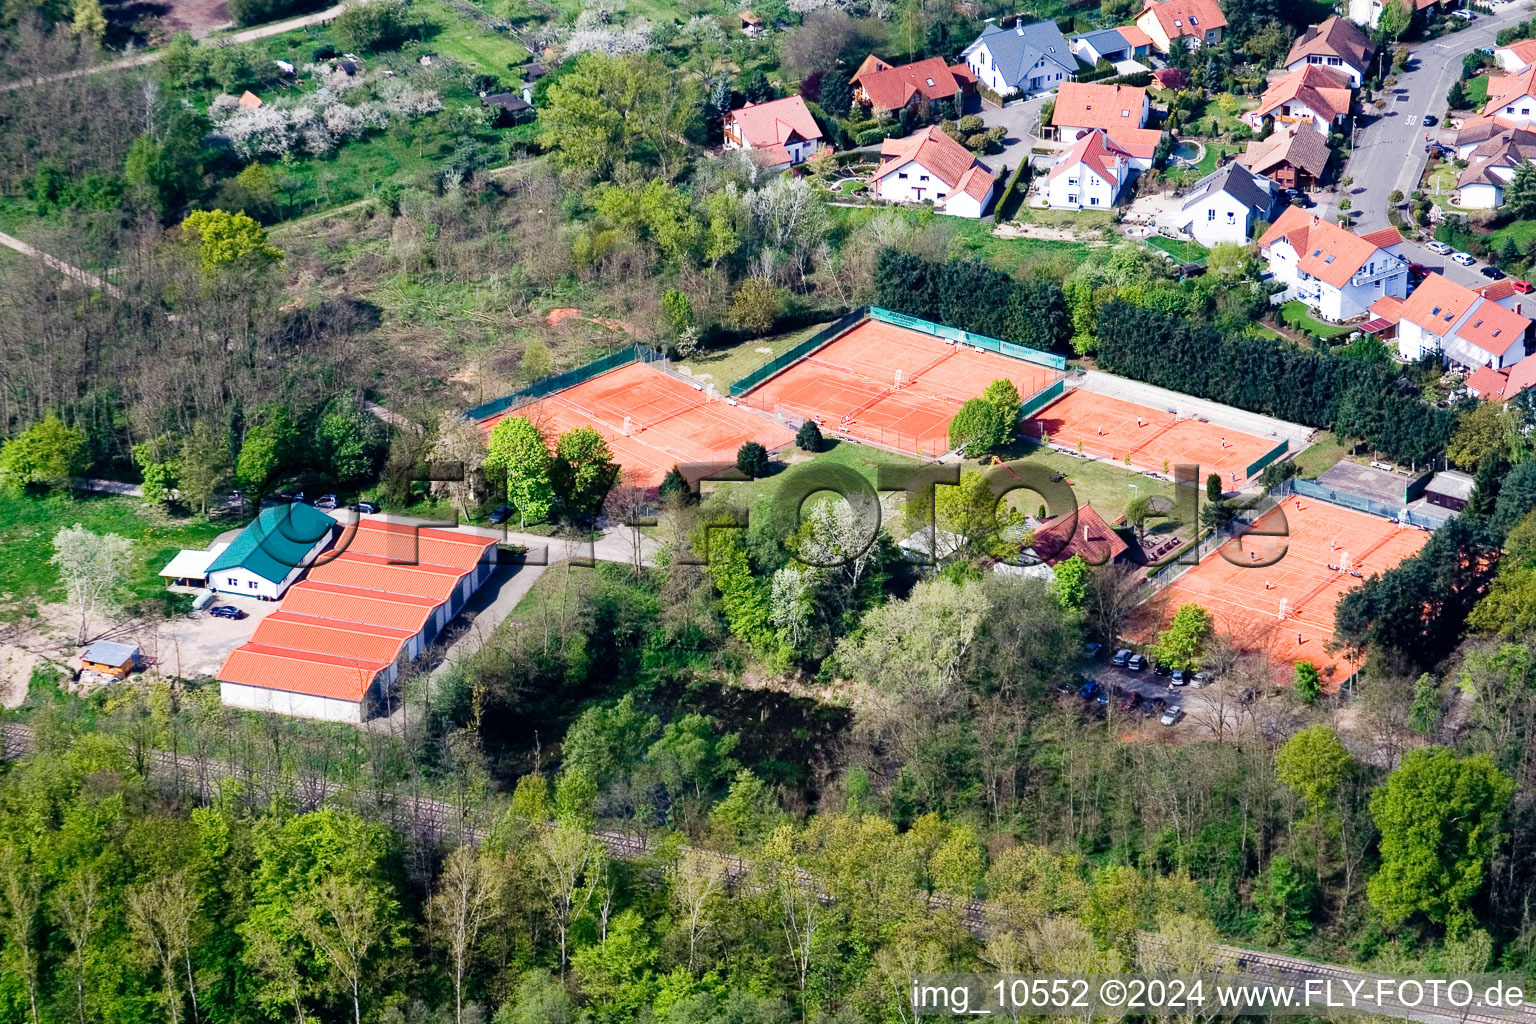 Tennisclub in Jockgrim im Bundesland Rheinland-Pfalz, Deutschland vom Flugzeug aus